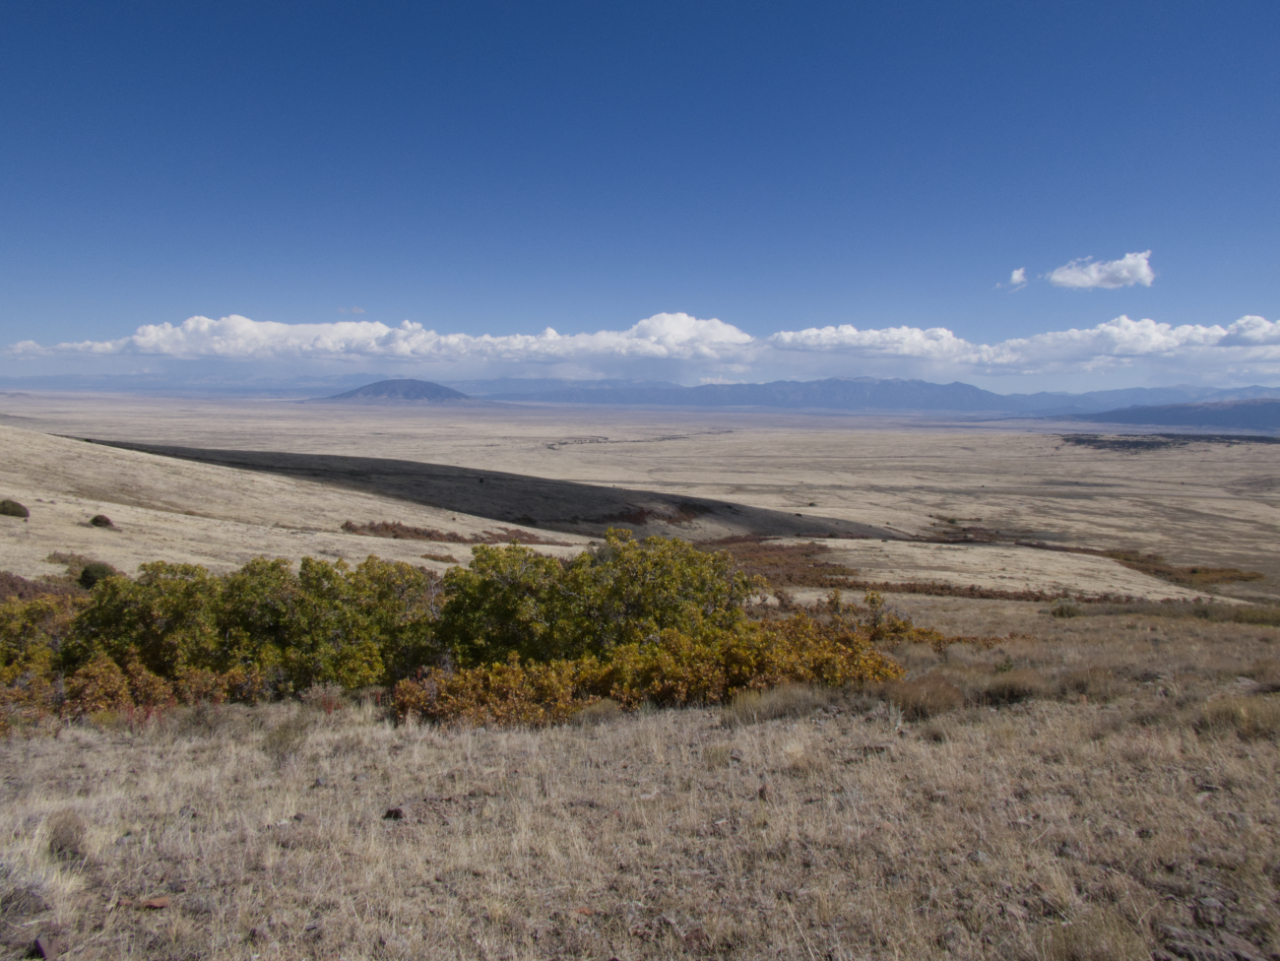 View across the valley to the Sangre de Cristo Mountains